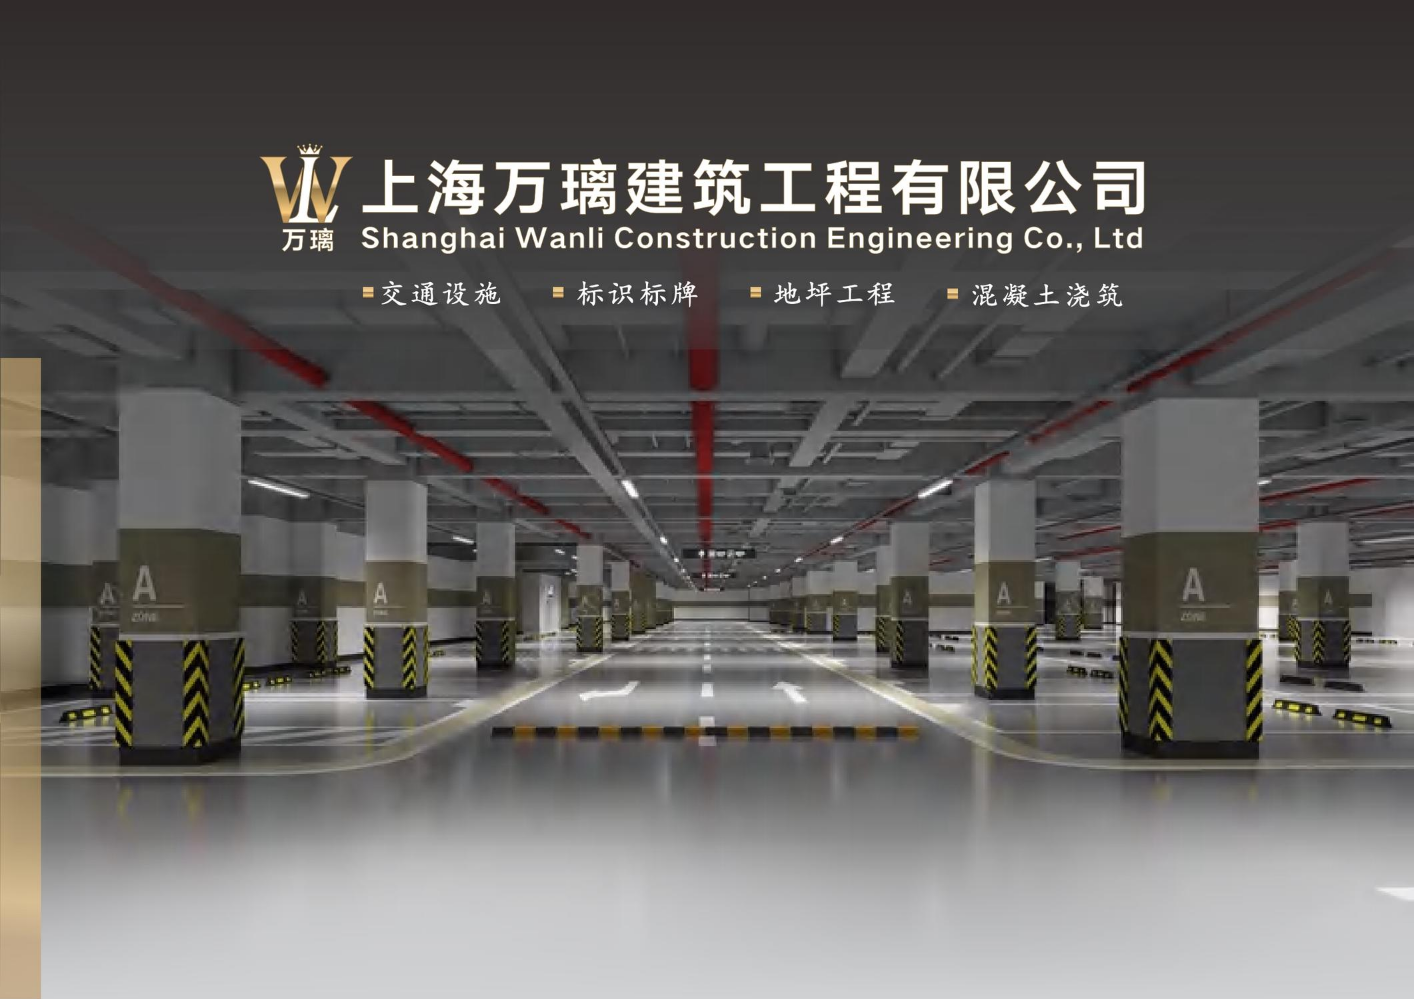 上海万璃建筑工程有限公司宣传册